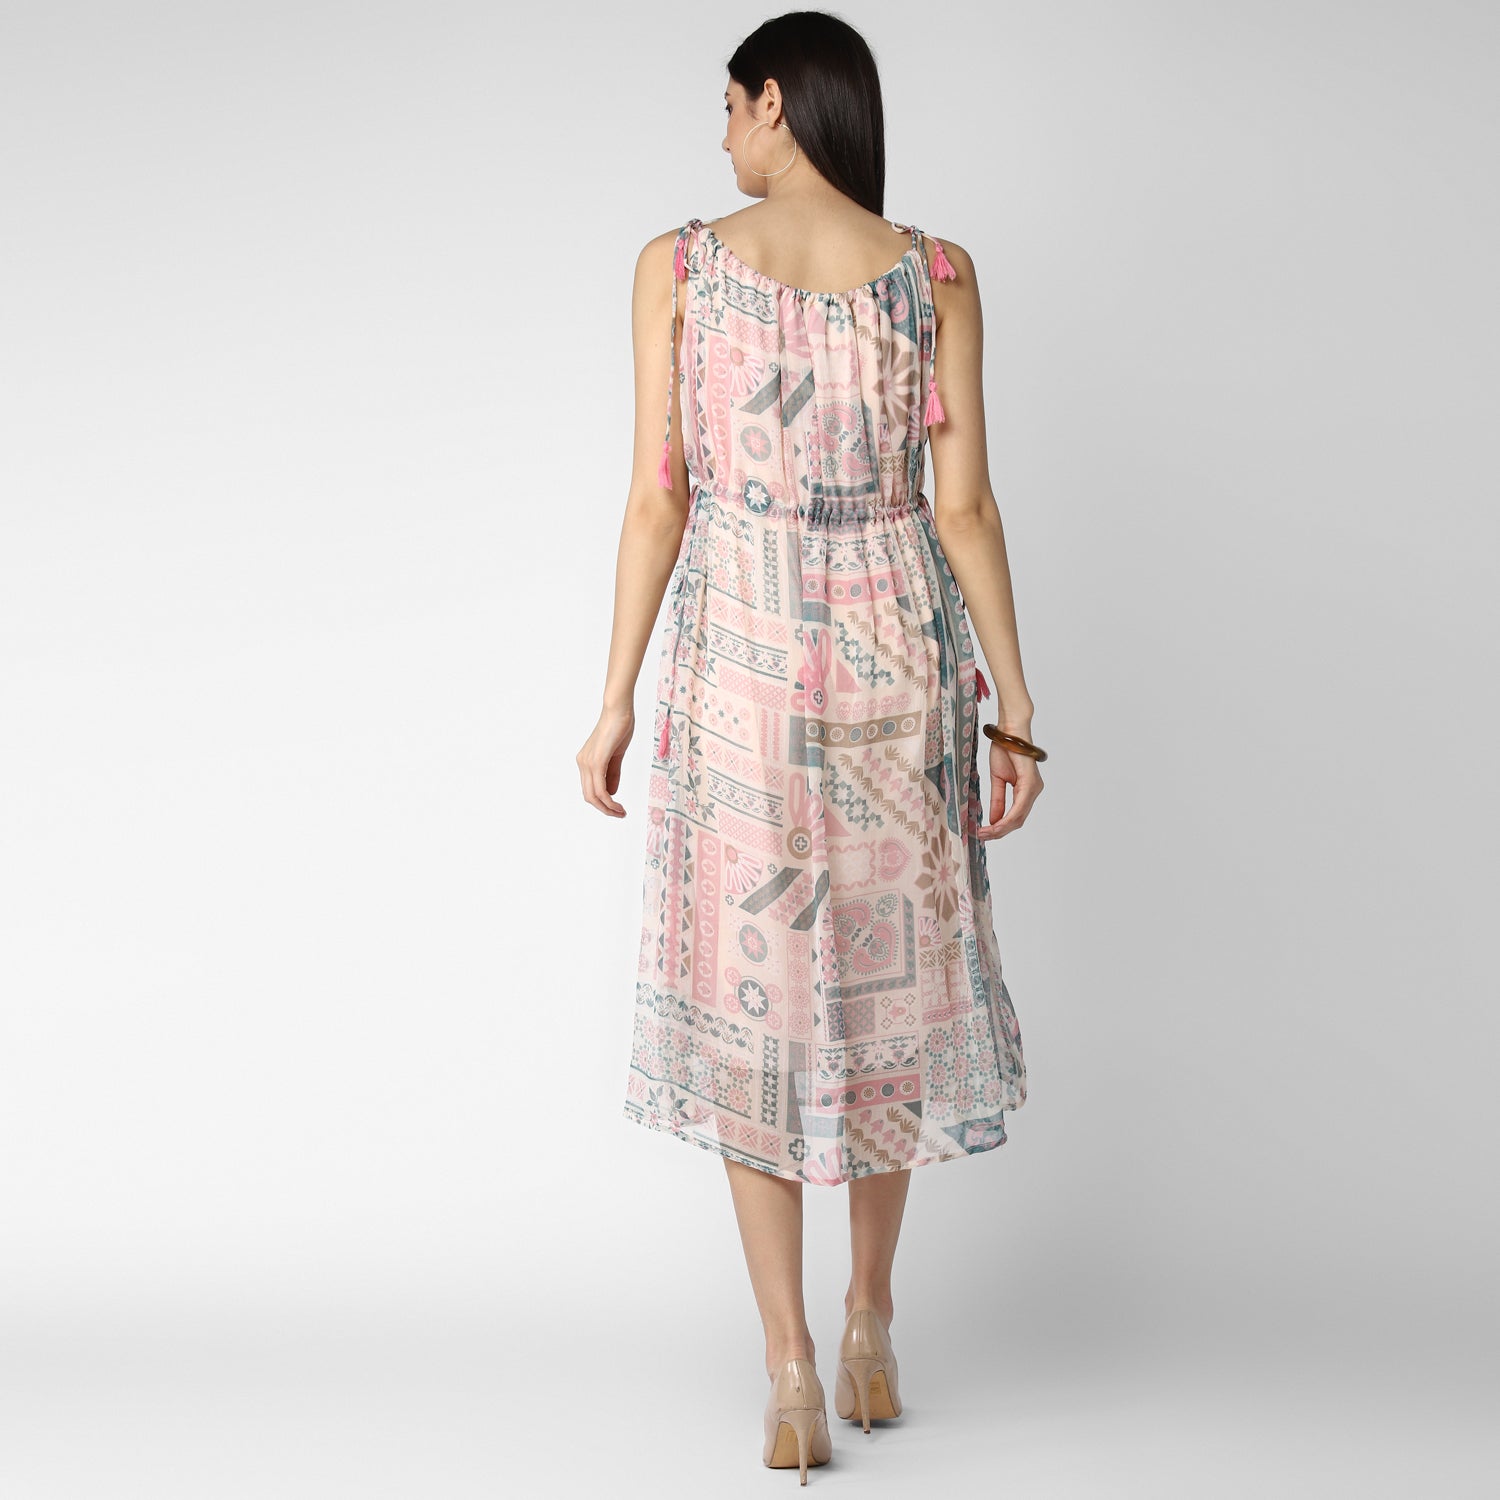 Women's Pink Chiffon Tieup Dress - StyleStone